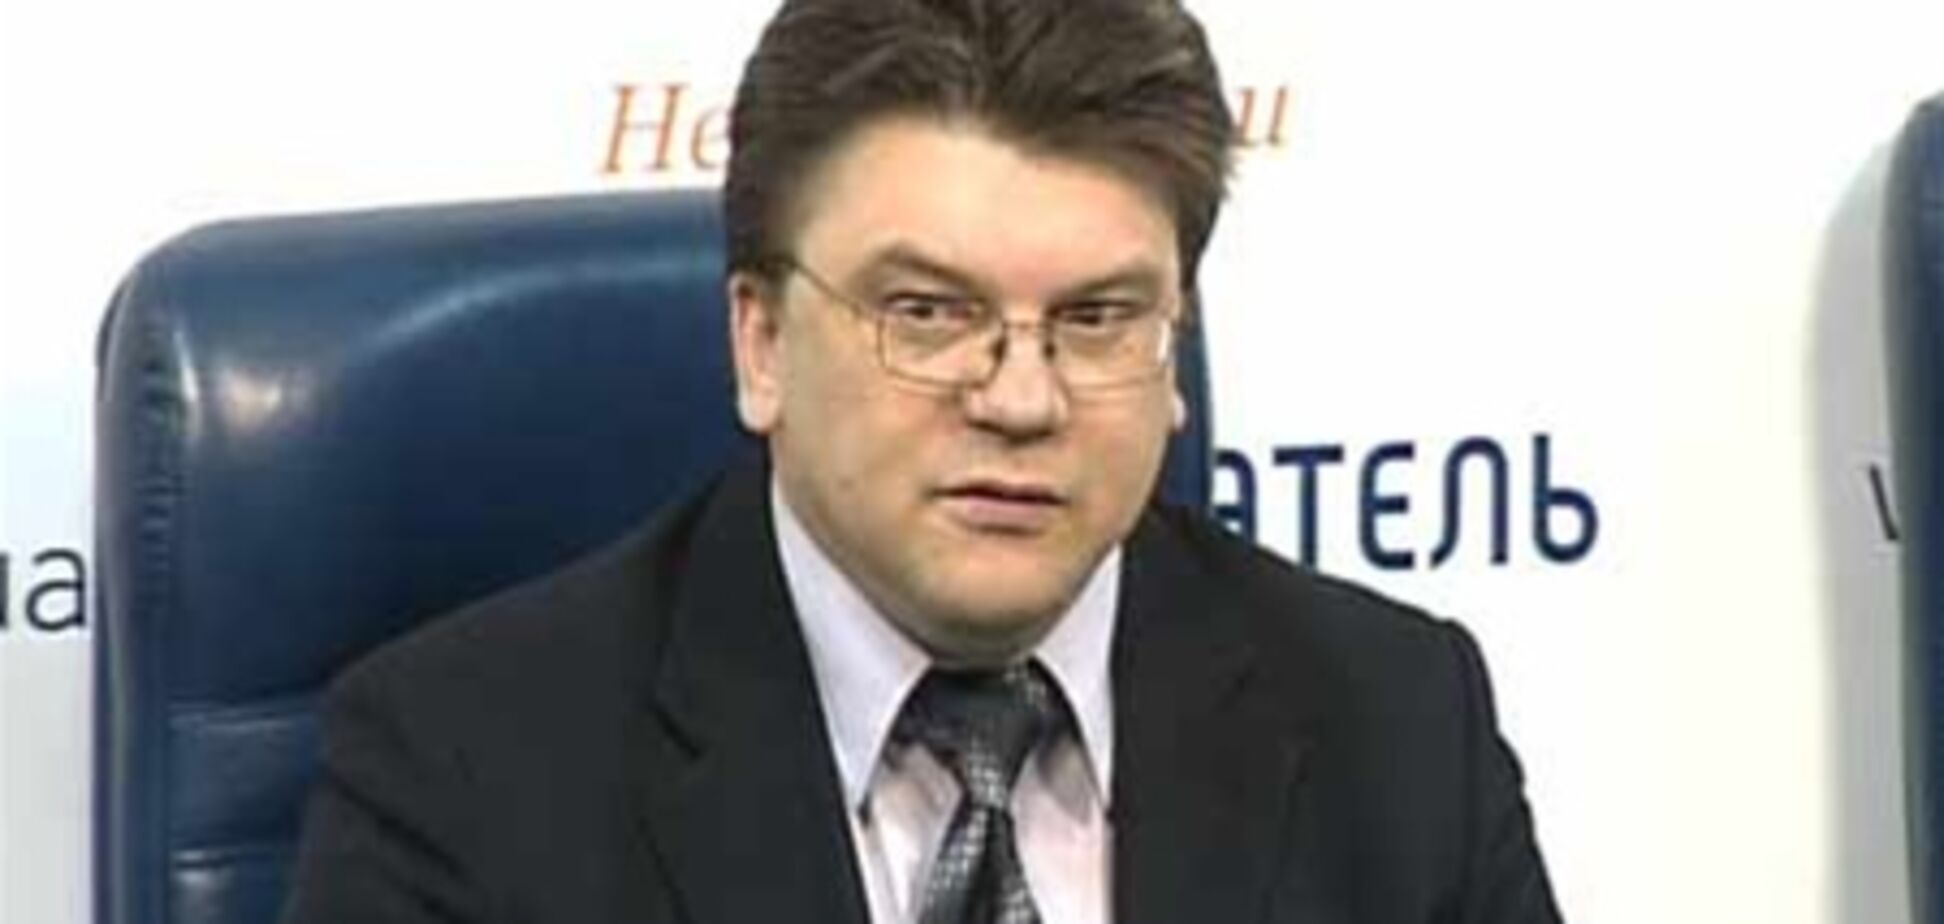 Питання про декриміналізацію статті Тимошенко може зважитися на референдумі - Жданов